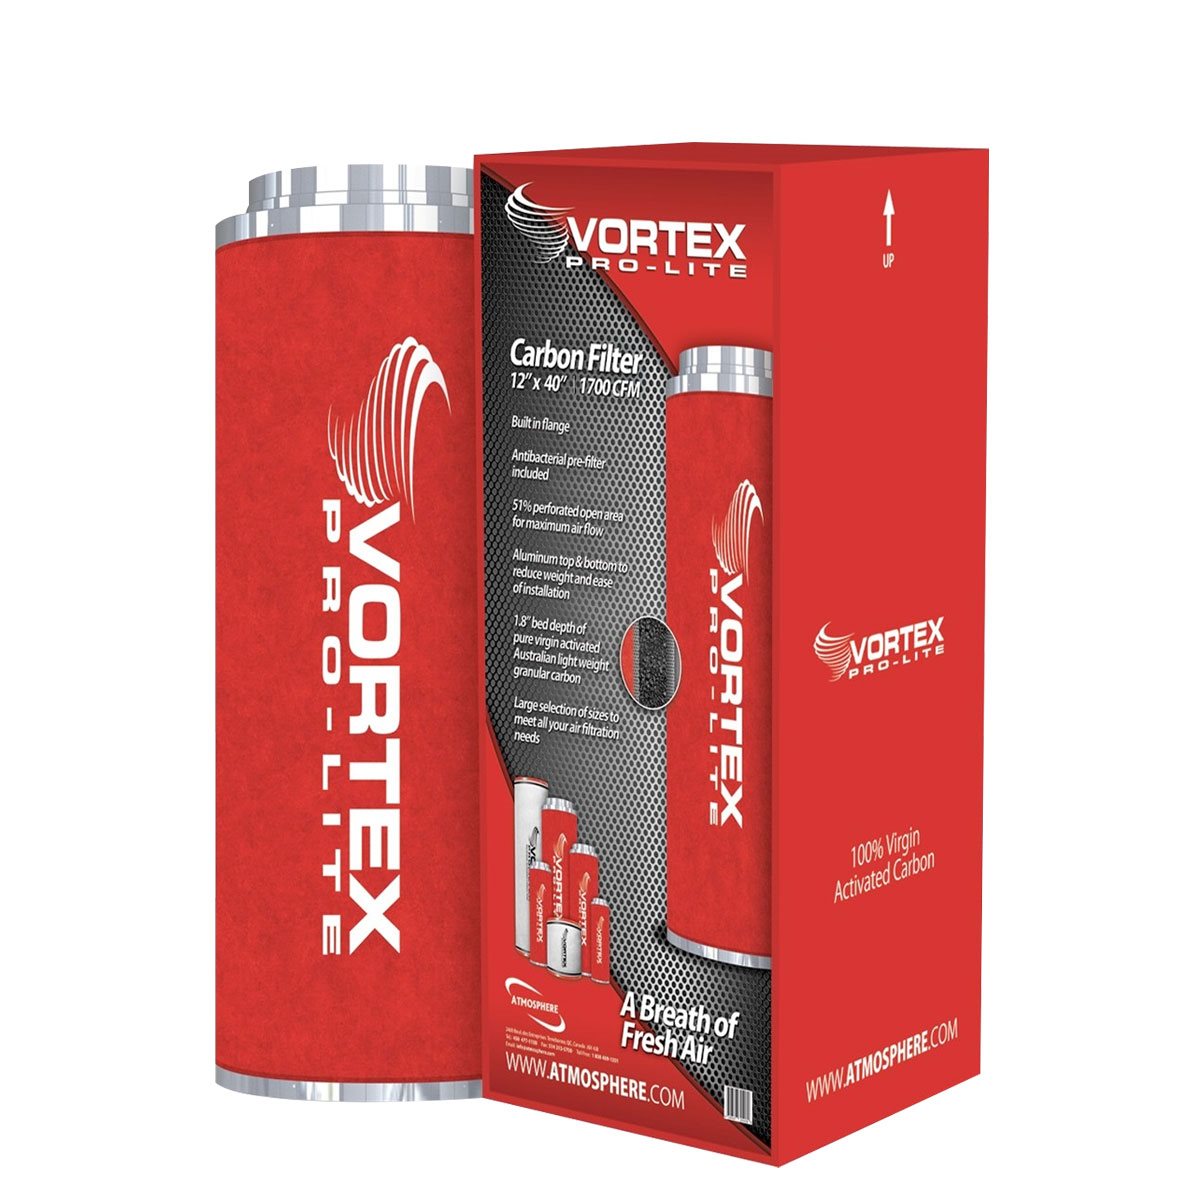 Vortex Pro-Lite Filter 12" x 40" (1700 CFM)